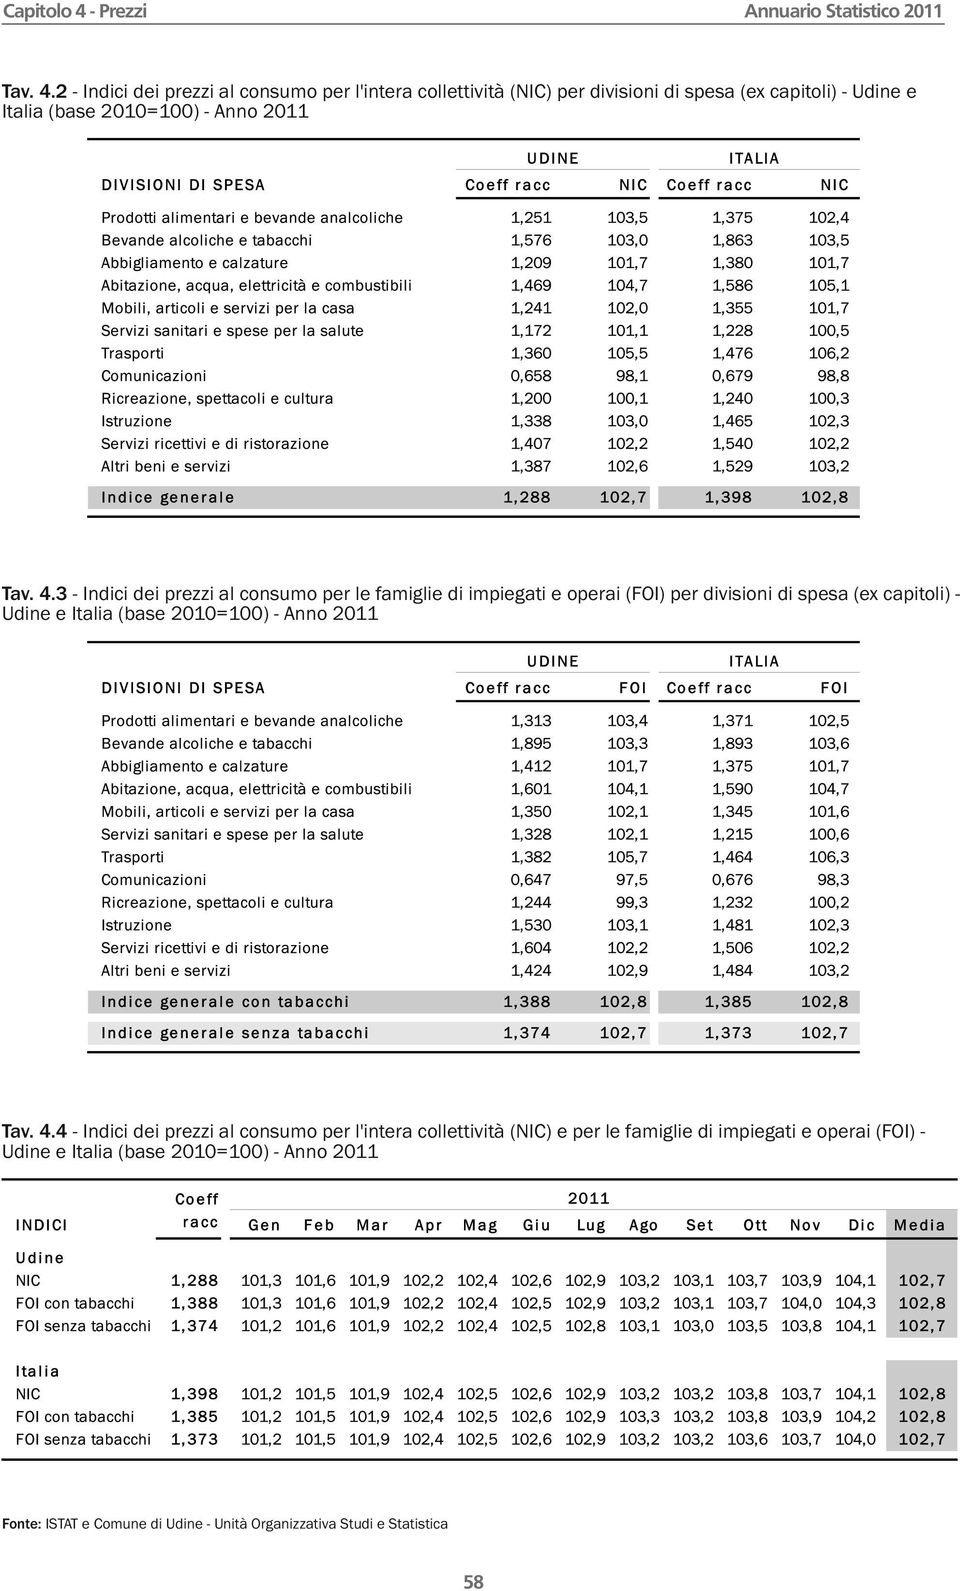 2 - Indici dei prezzi al consumo per l'intera collettività (NIC) per divisioni di spesa (ex capitoli) - Udine e Italia (base